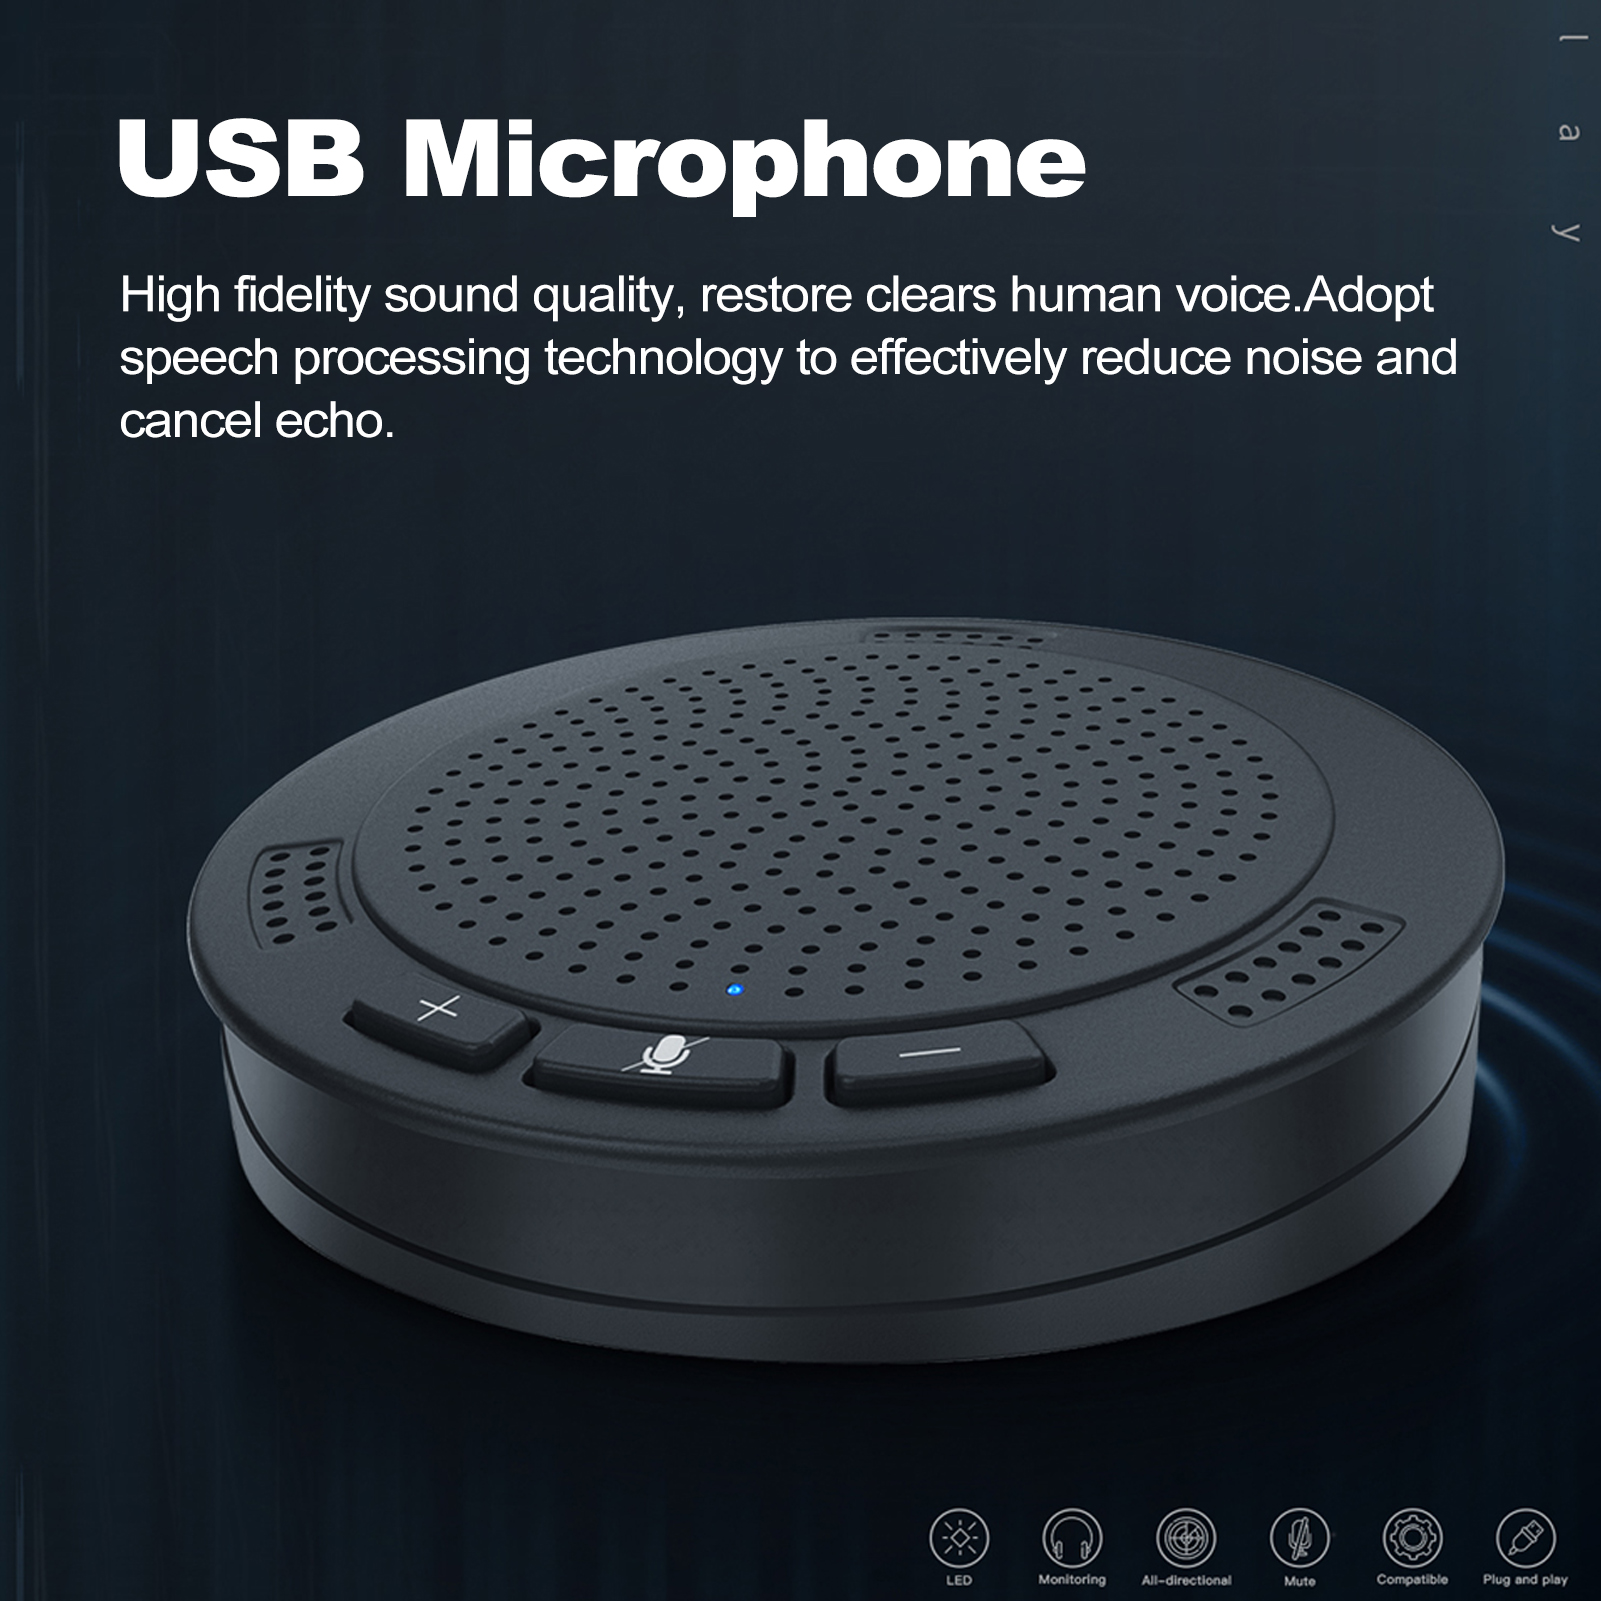 ข้อมูลเพิ่มเติมของ 【ซื้อแค่นี้ก็พอ】ไมโครโฟน ประชุม ไมค์เก็บเสียง เก็บเสียงรอบทิศทาง360°  ทำให้เสียงคมชัดไร้เสียงรบกวน ไมโครโฟนขนาดเล็ก conference microphone